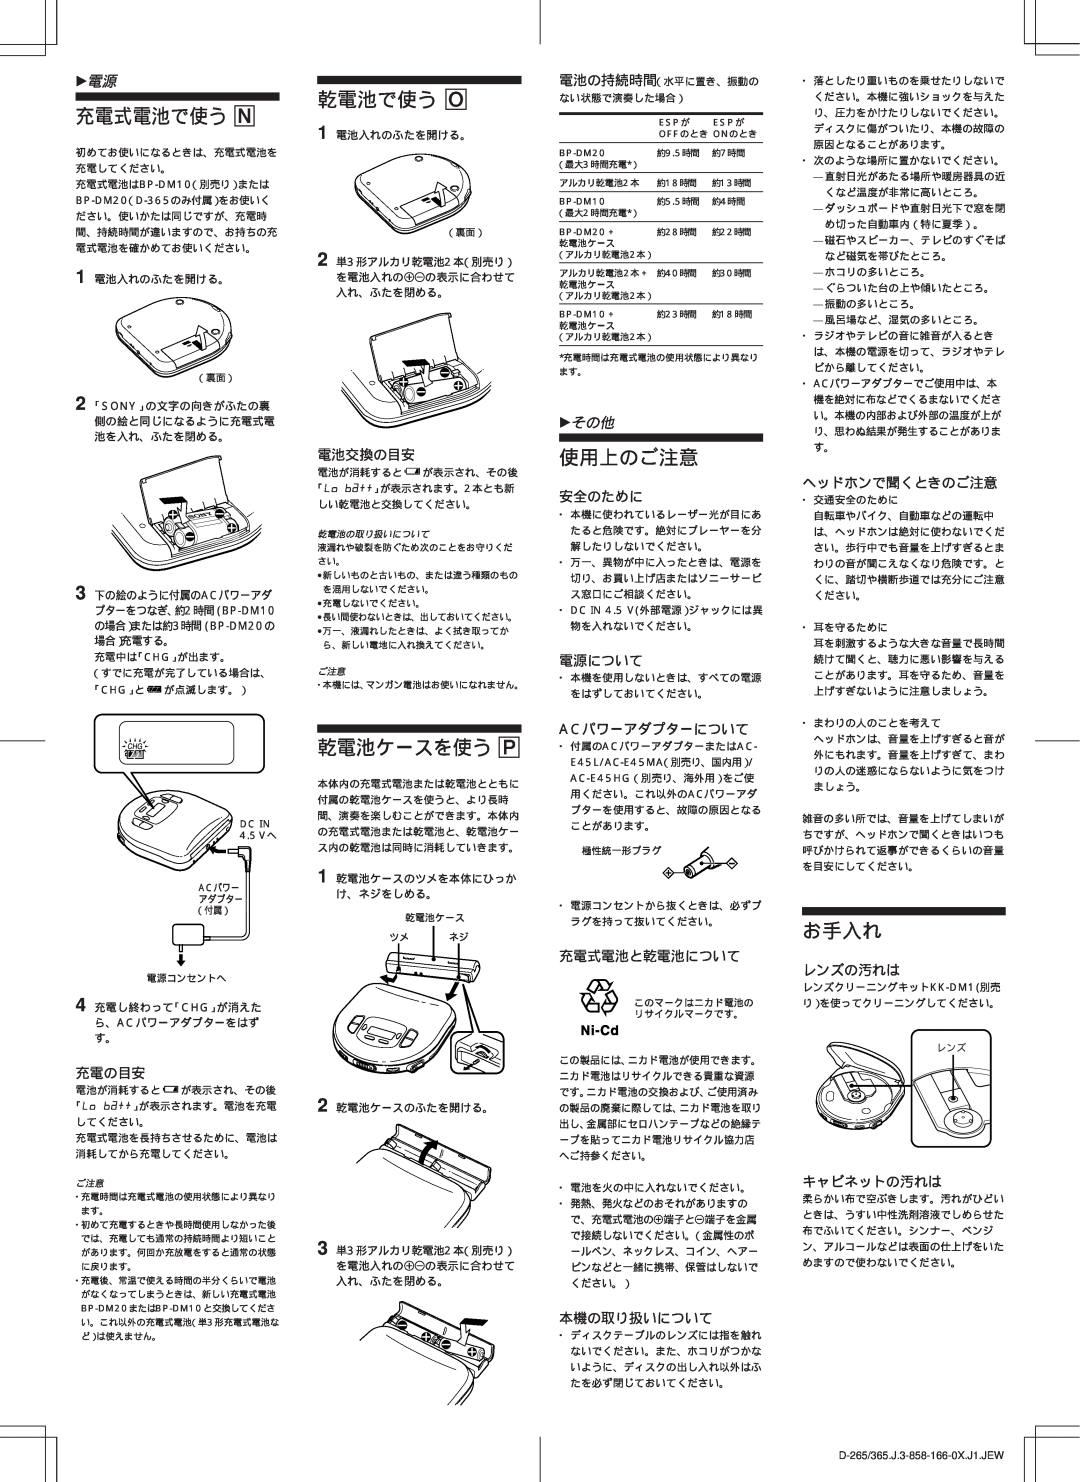 Sony D-265 manual 充電式電池で使う N, 乾電池で使う O, 乾電池ケースを使う P, 使用上のご注意, お手入れ, zその他 